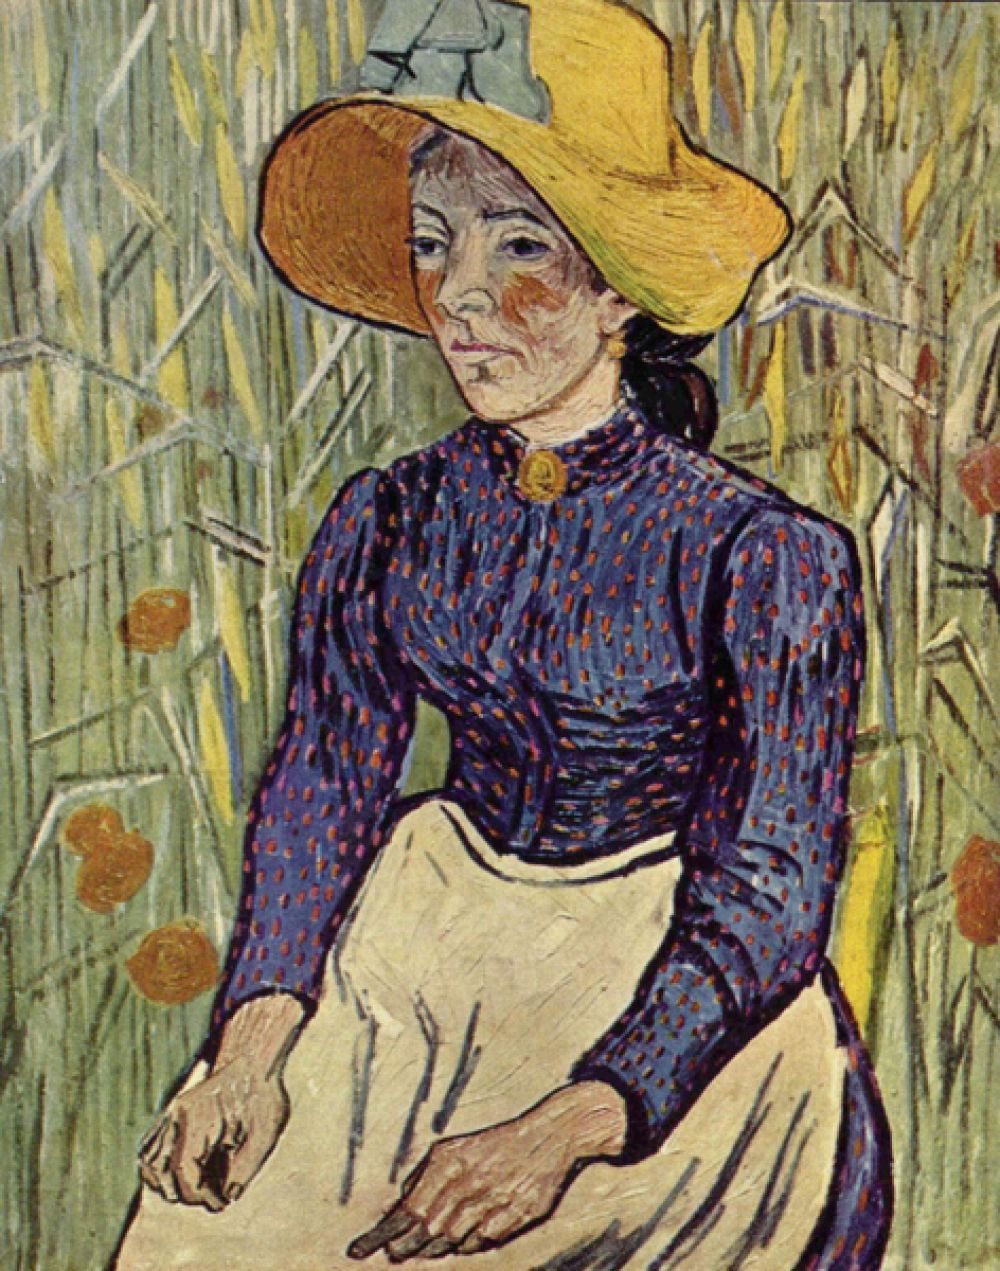 Картина «Молодая крестьянка в соломенной шляпе в пшенице» была продана в 1997 году за 47,5 млн в частную коллекцию Стивена Уинна. В 2005 году стало известно, что владелец перепродал ее вместе с «Купальщицами» Гогена Стивену Коэну за более чем 100 млн долларов.